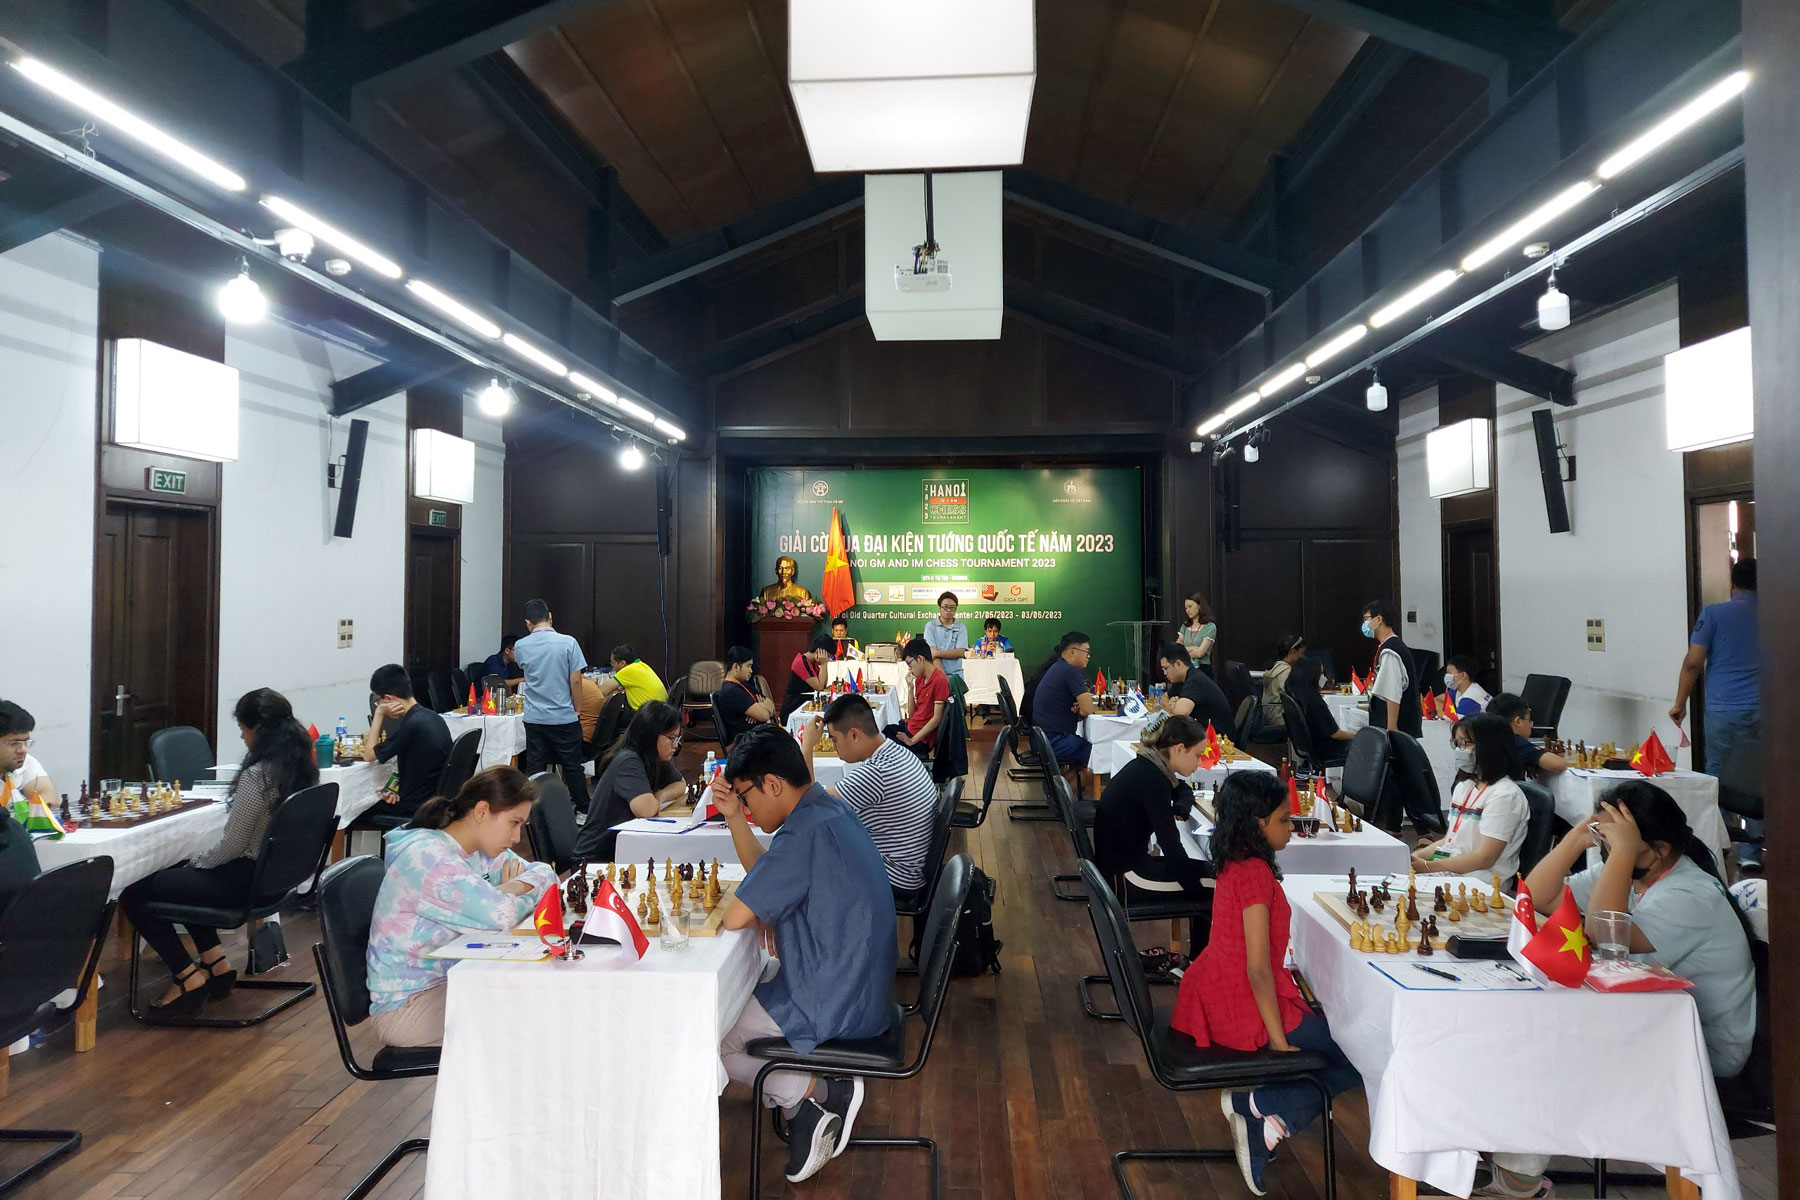 Hanoi GM-IM-WGM Chess Tournament 2023